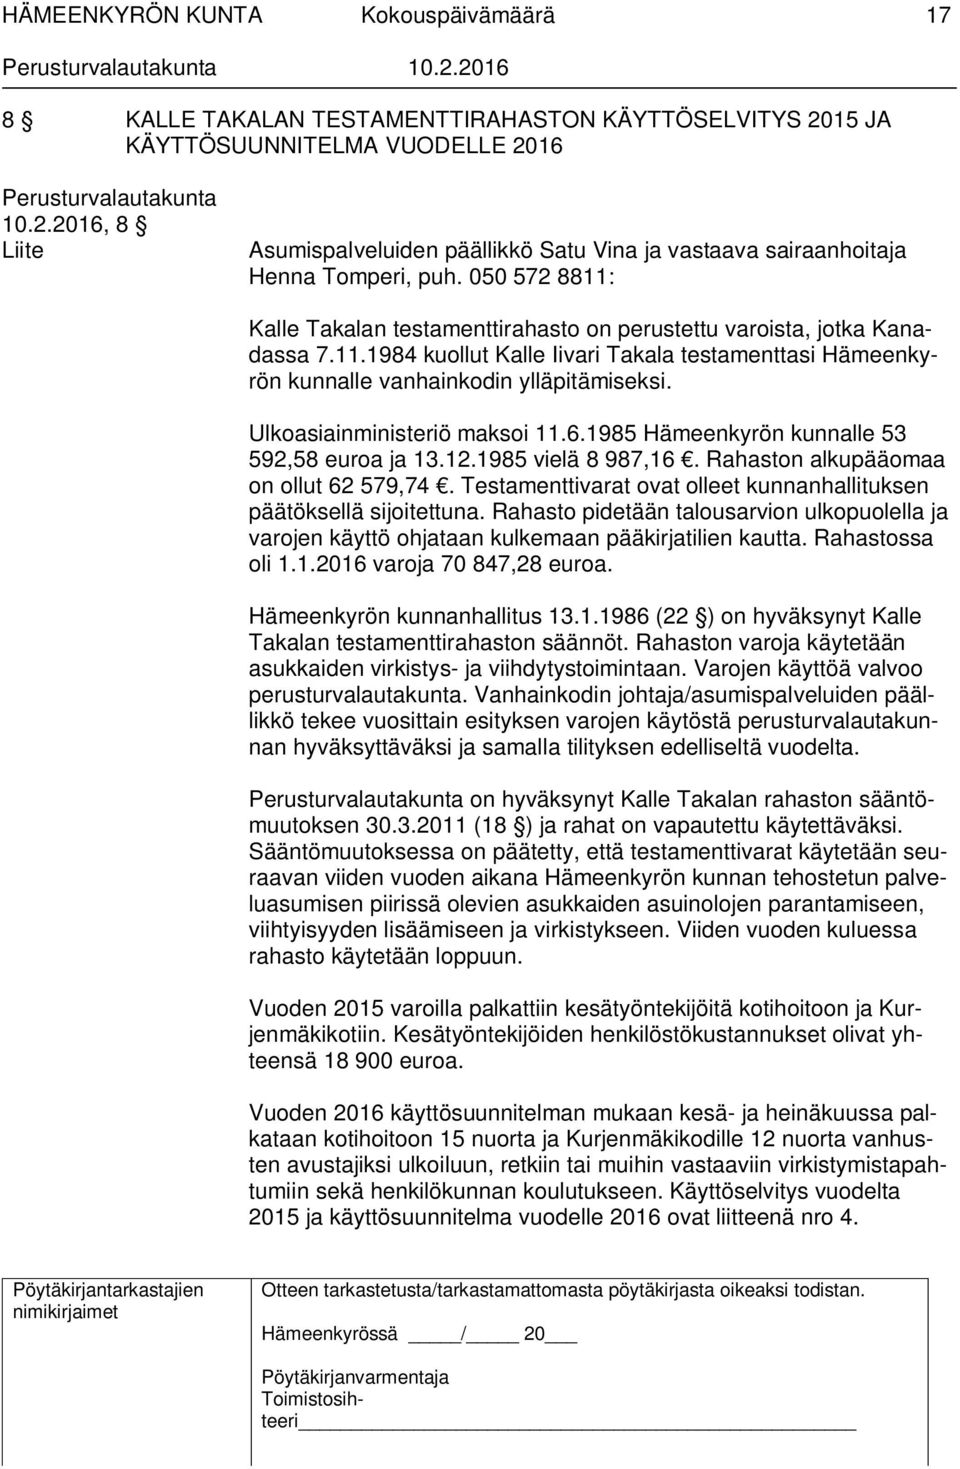 Ulkoasiainministeriö maksoi 11.6.1985 Hämeenkyrön kunnalle 53 592,58 euroa ja 13.12.1985 vielä 8 987,16. Rahaston alkupääomaa on ollut 62 579,74.